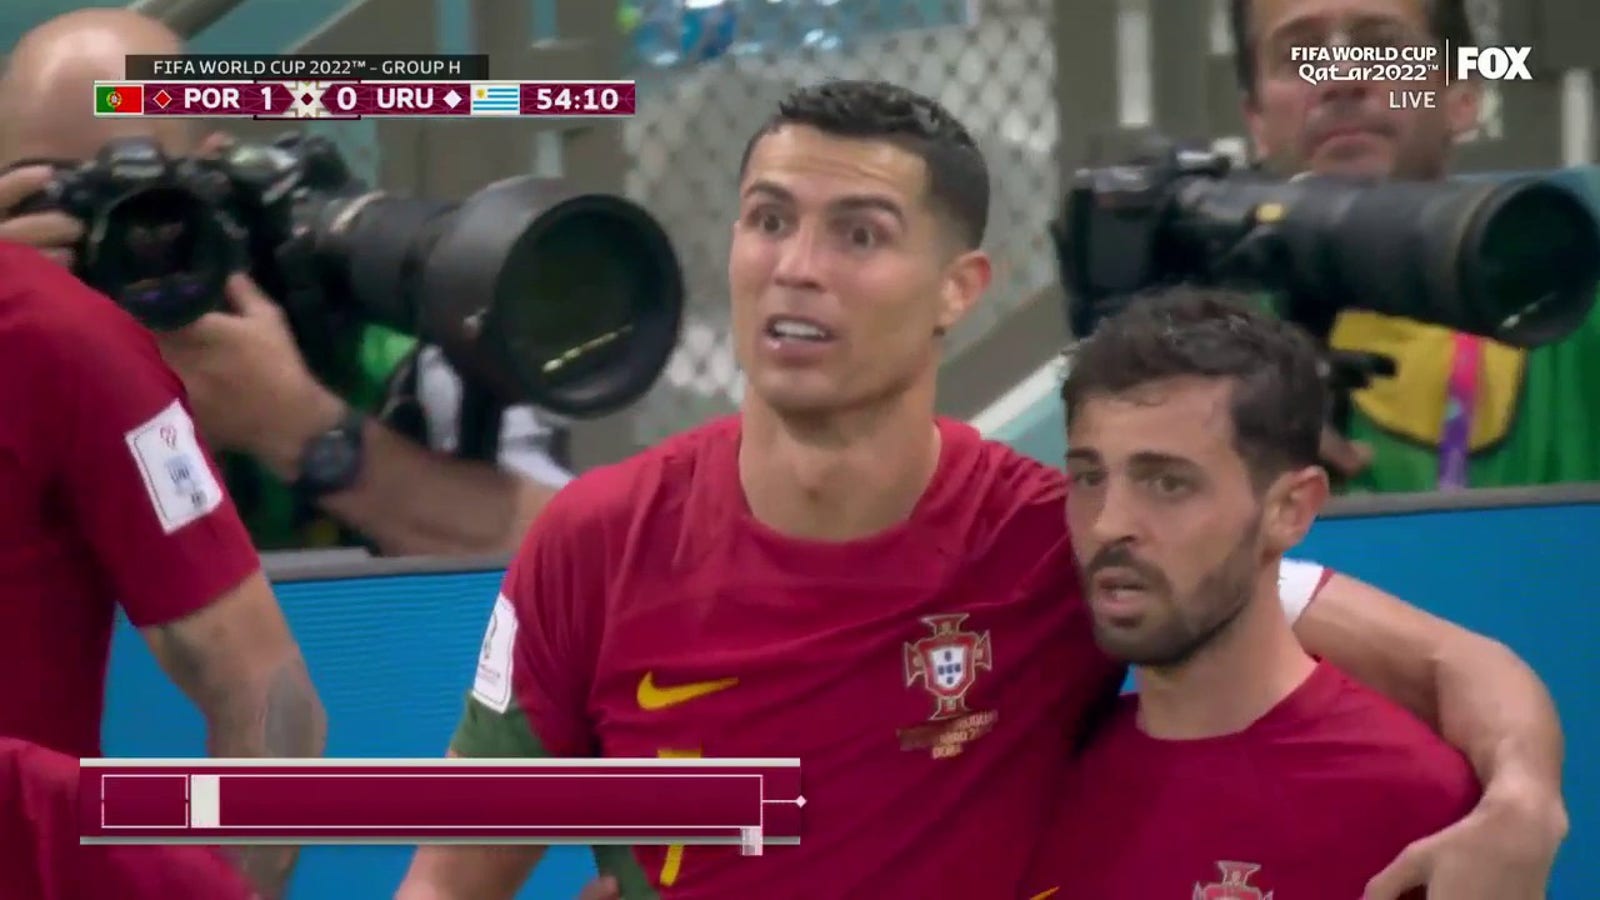 Portugal's Cristiano Ronaldo scores goal vs. Uruguay in 54'